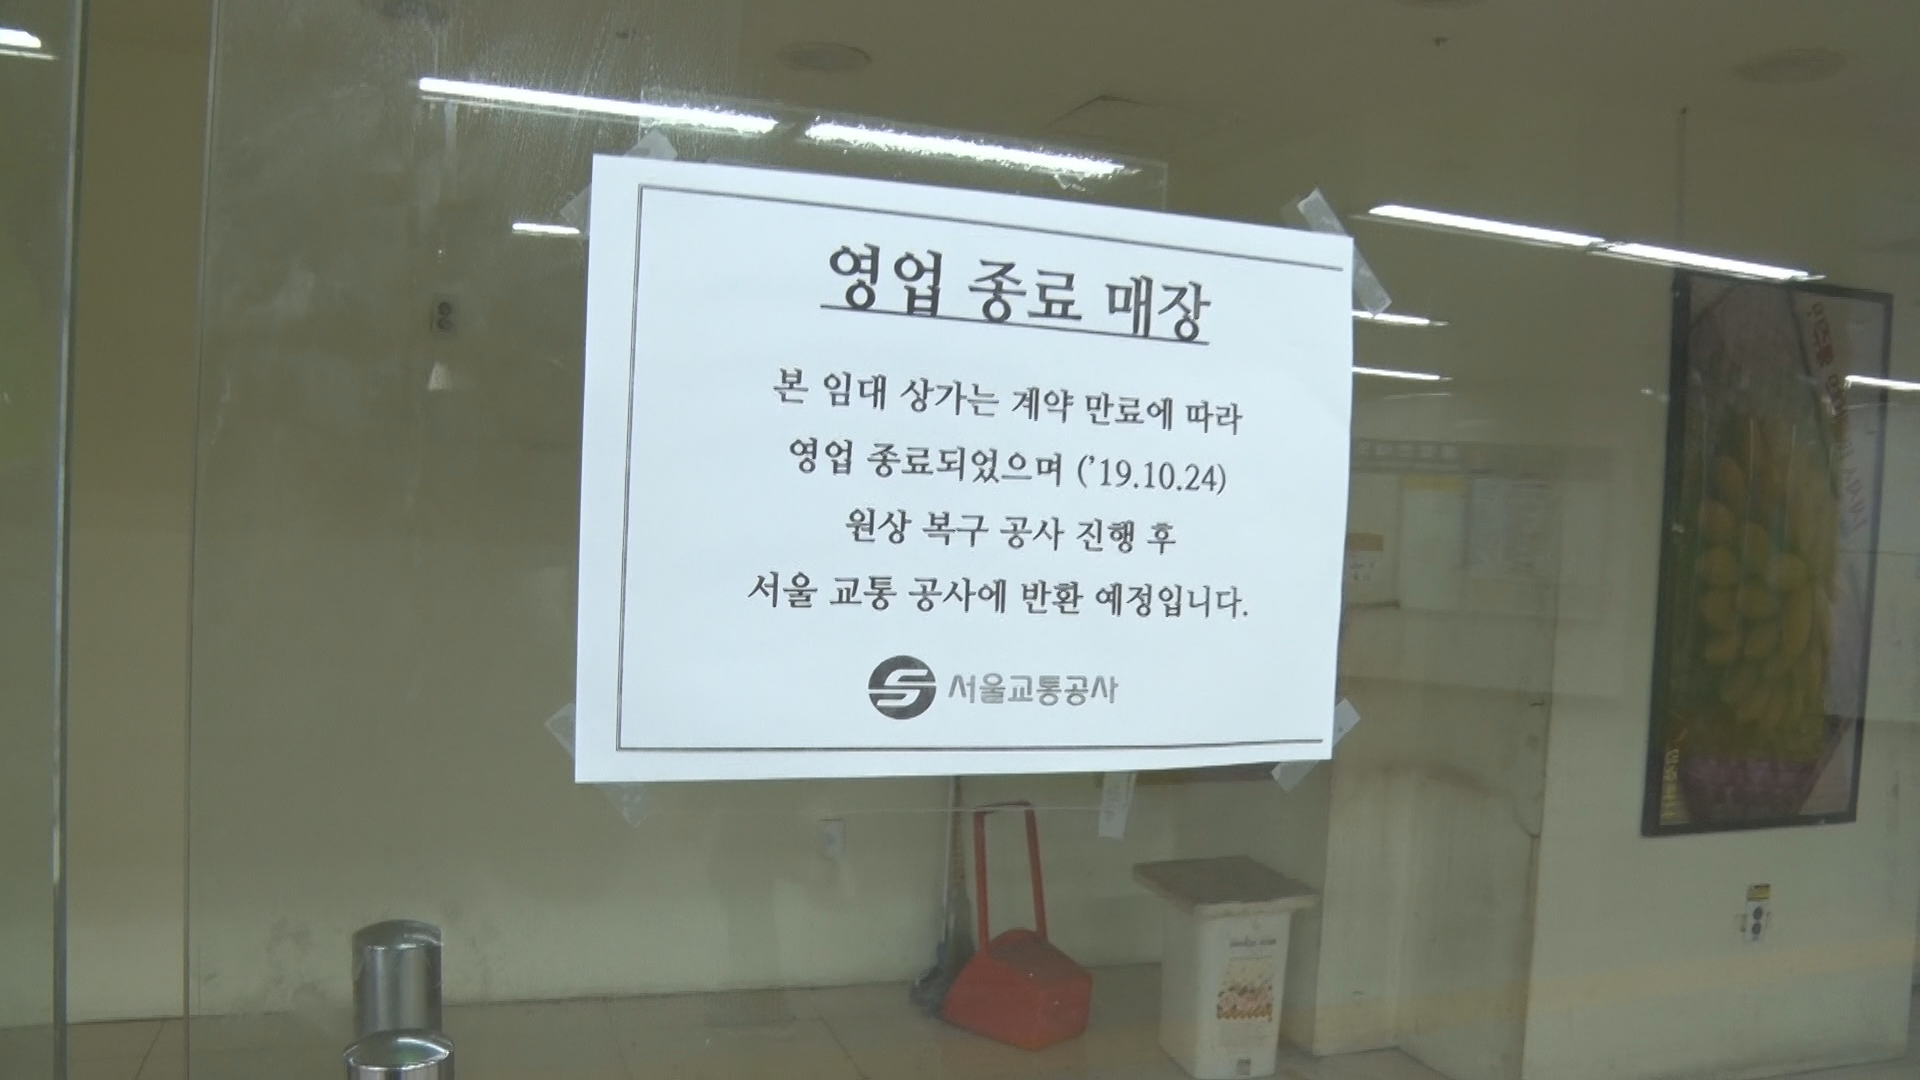 지하철 6,7호선 406개 점포에 임대 상가 계약 만료에 따라 영업이 종료되었을 알리는 안내문을 붙힌 서울교통공사